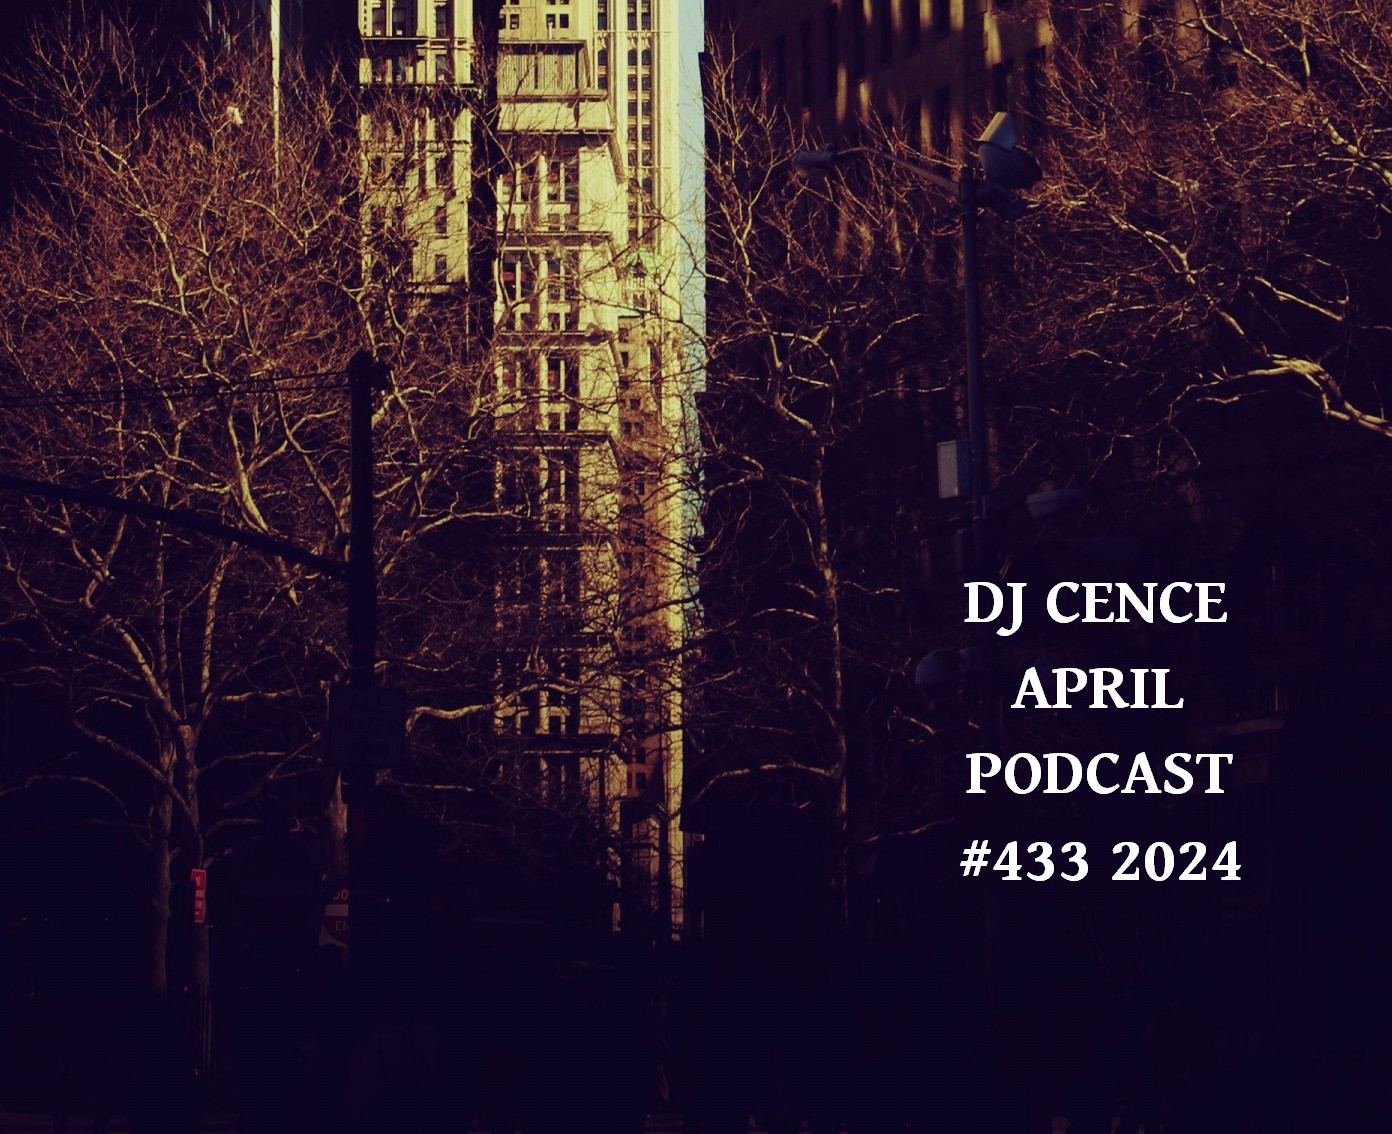 DJ CENCE APRIL PODCAST #433 #2024